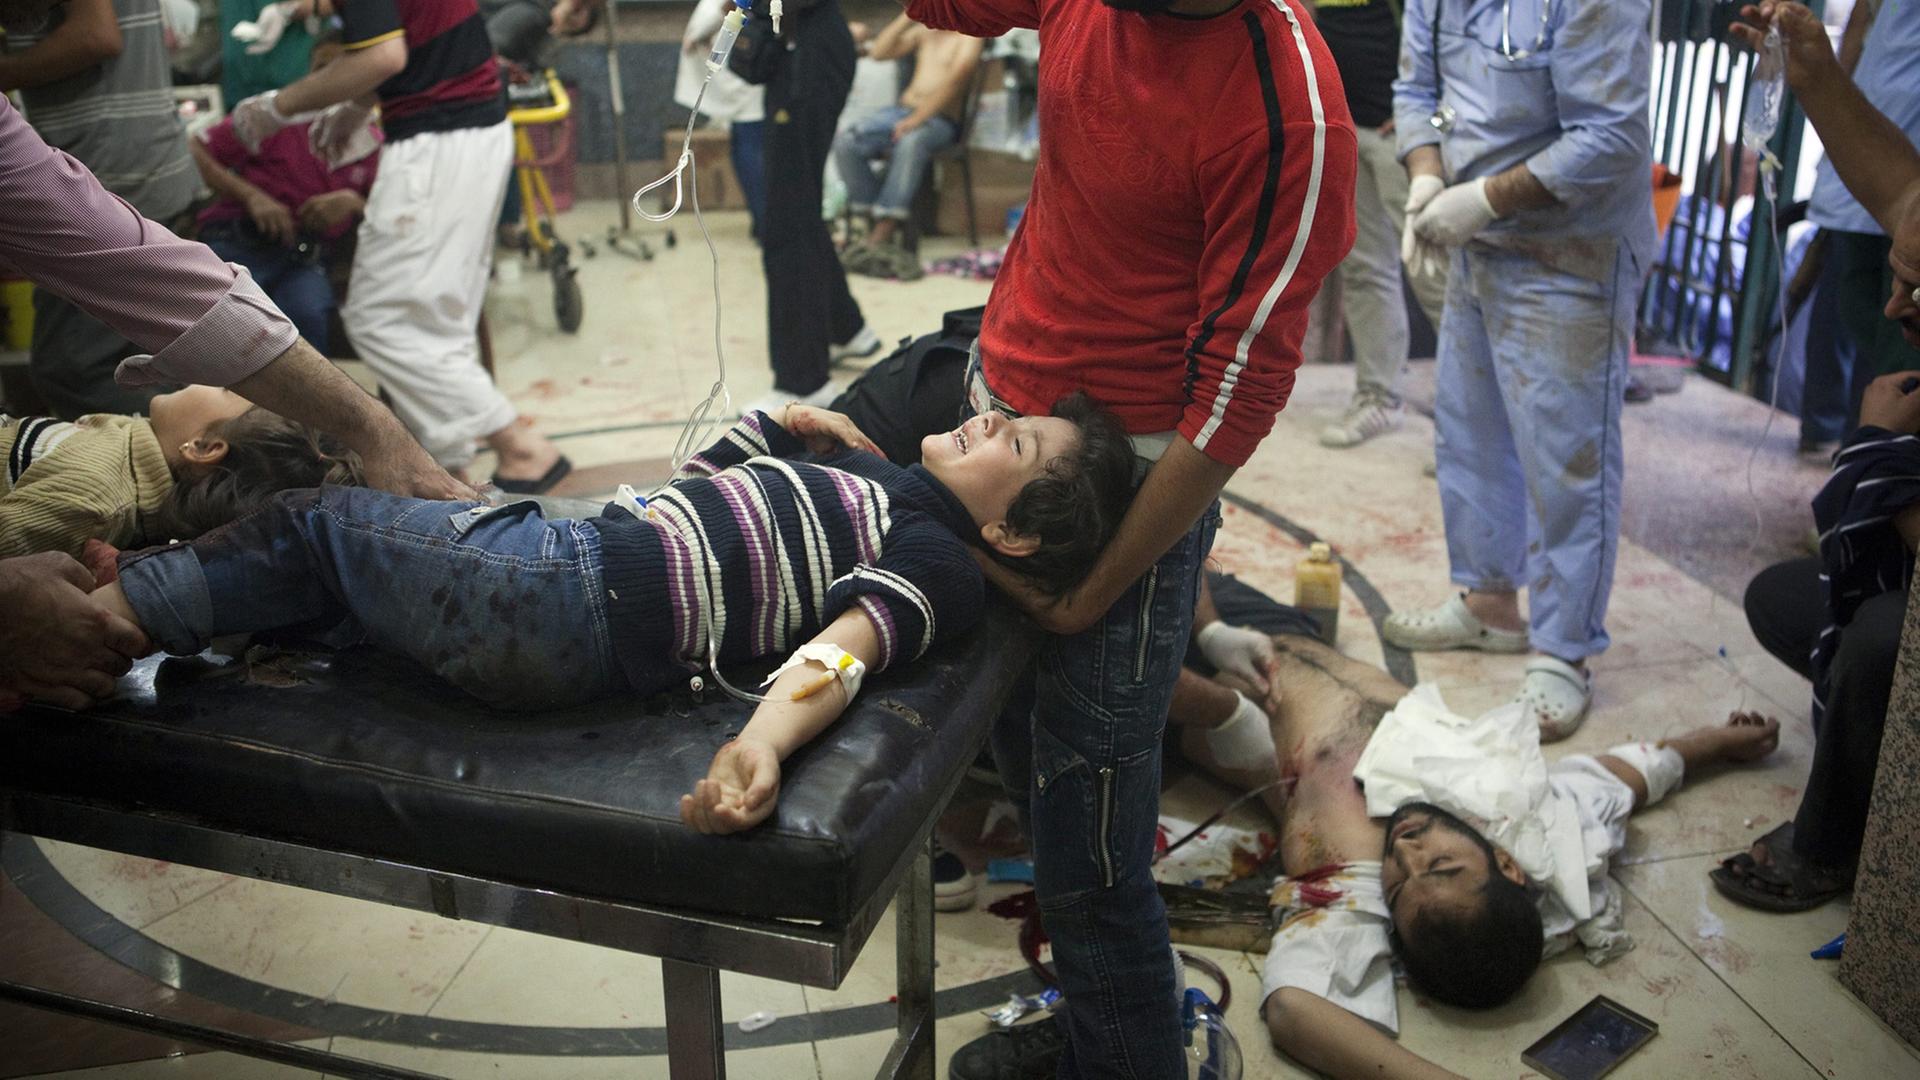 Verletzte im Dar al Shifa Krankenhaus in Aleppo, Syrien, aufgenommen 2012